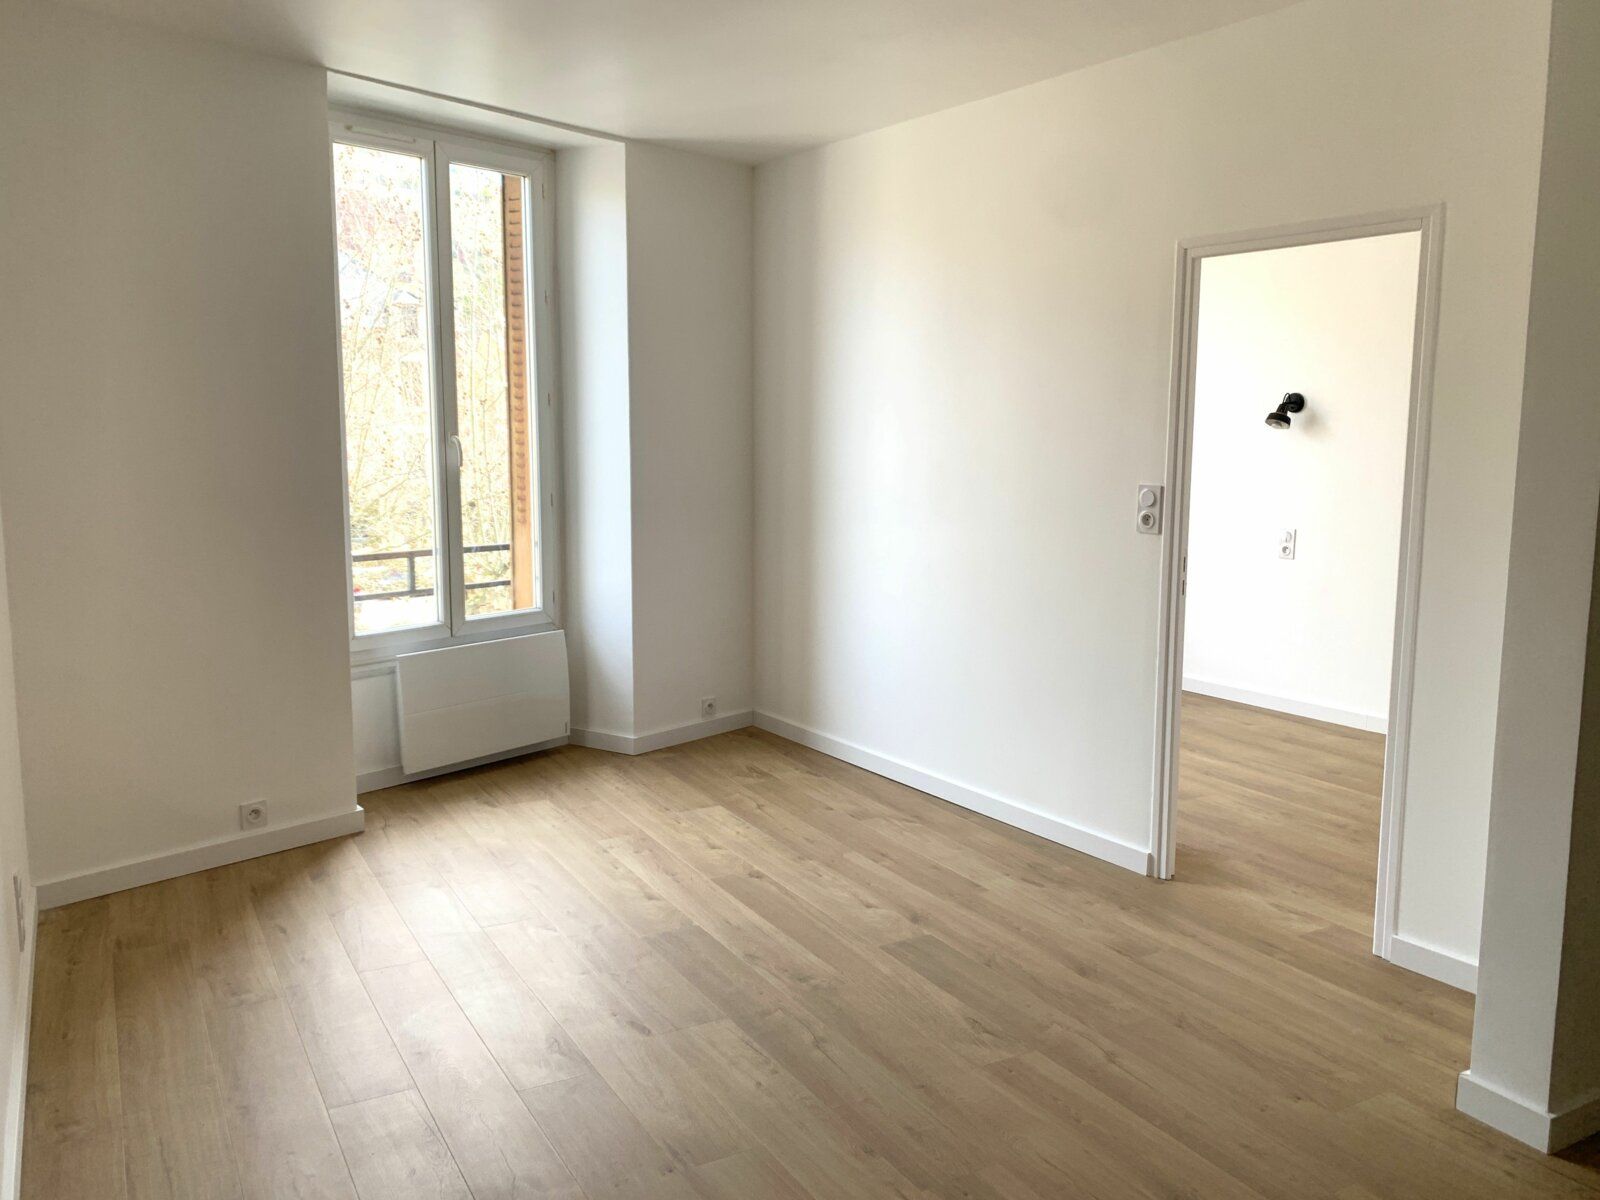 Appartement à louer 2 34.5m2 à Marcillac-Vallon vignette-1